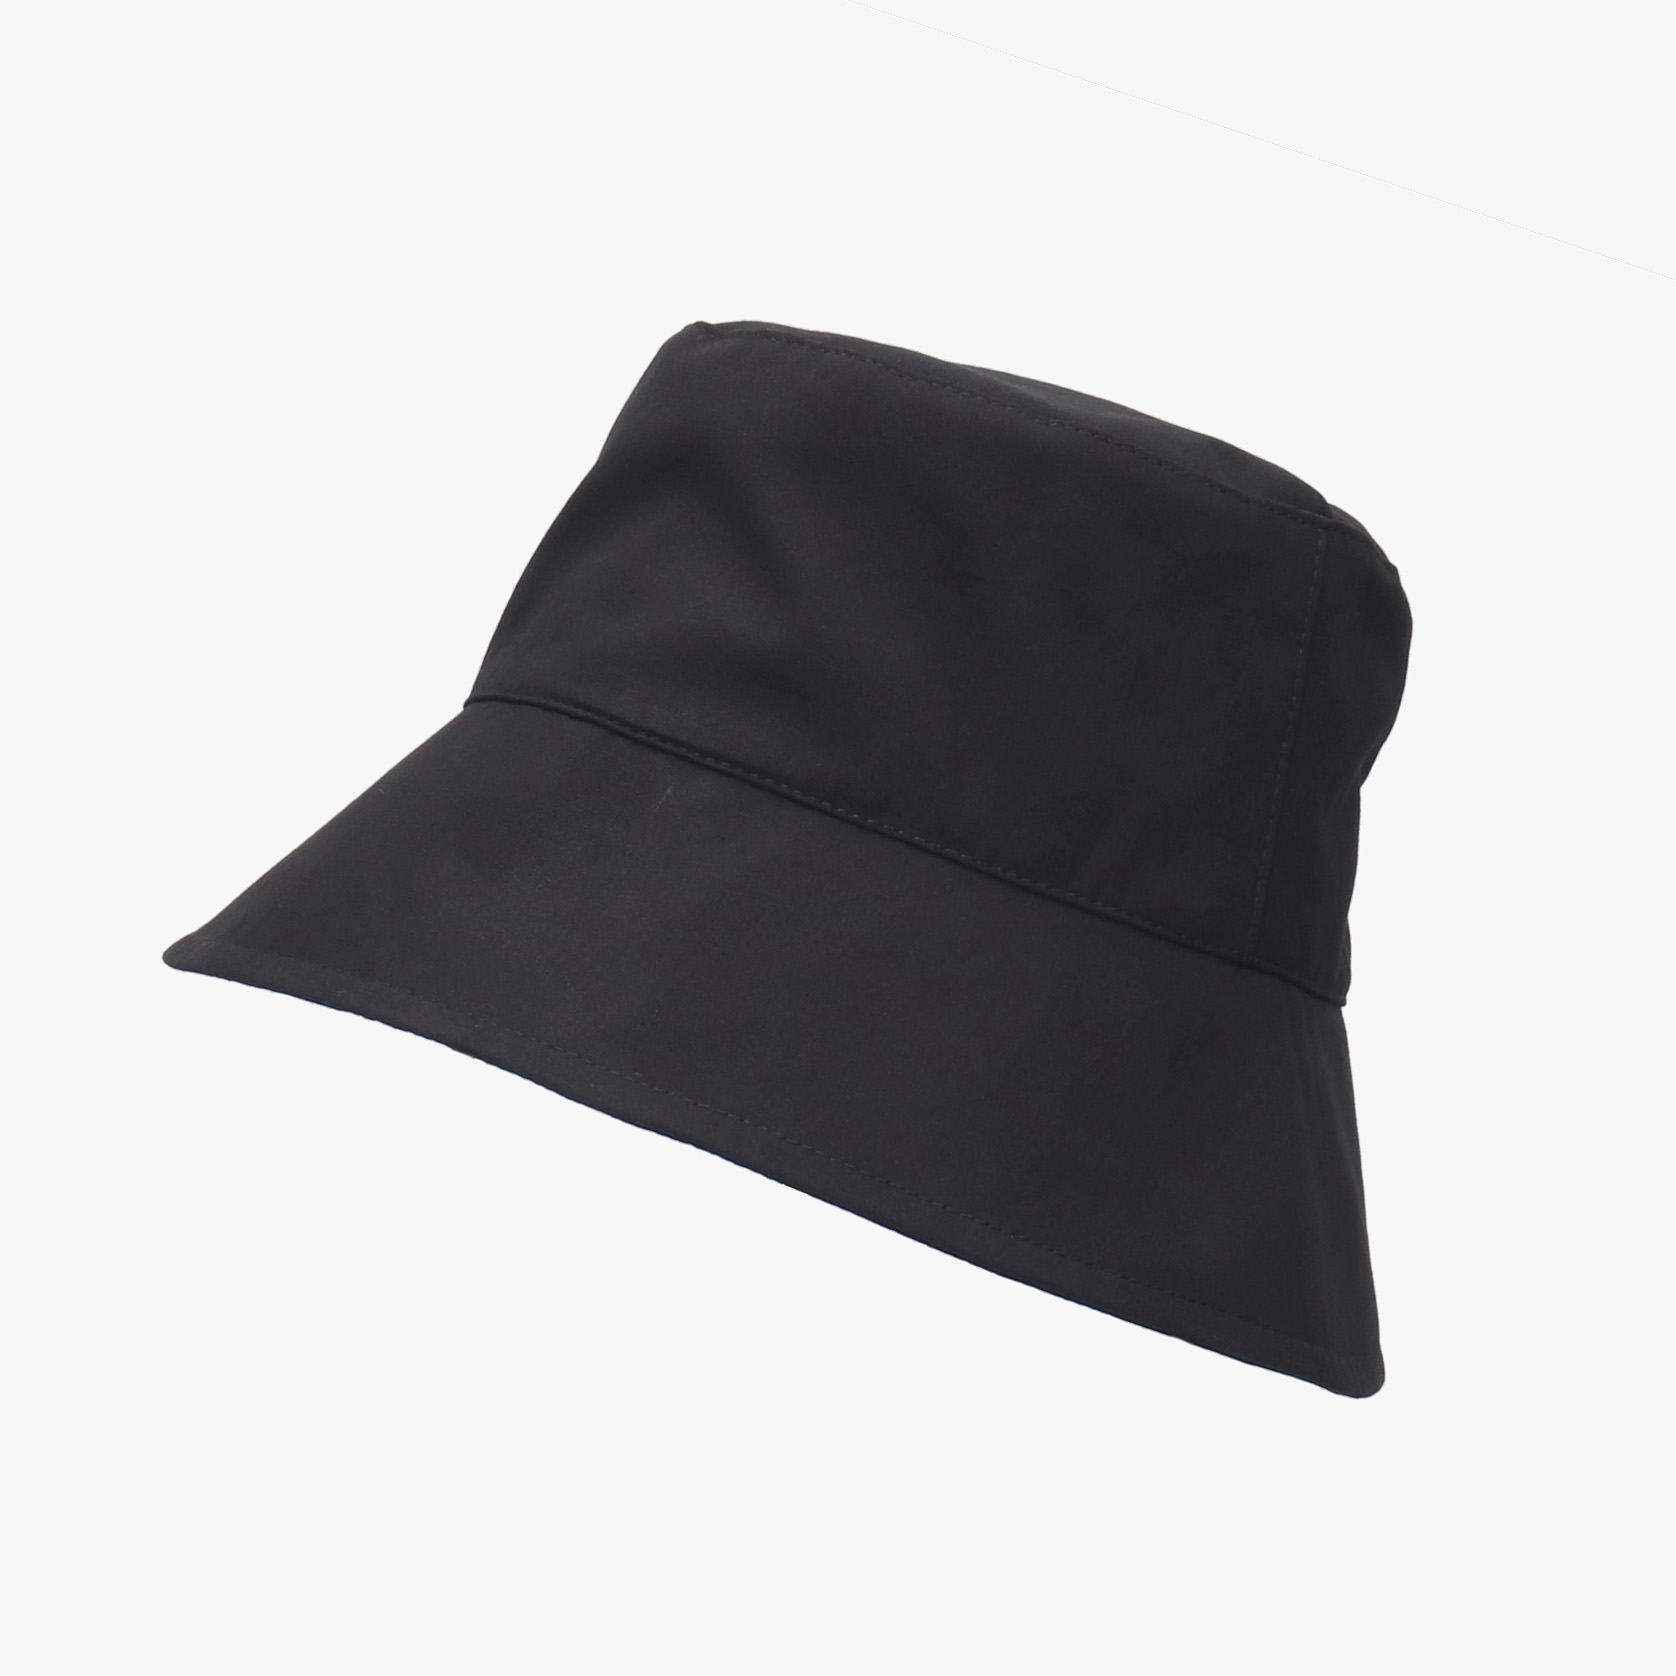 レイヤーブリムハット 帽子 つば広 レディース ハット 日よけ UVカット 紫外線 サイズ調整 遮光...